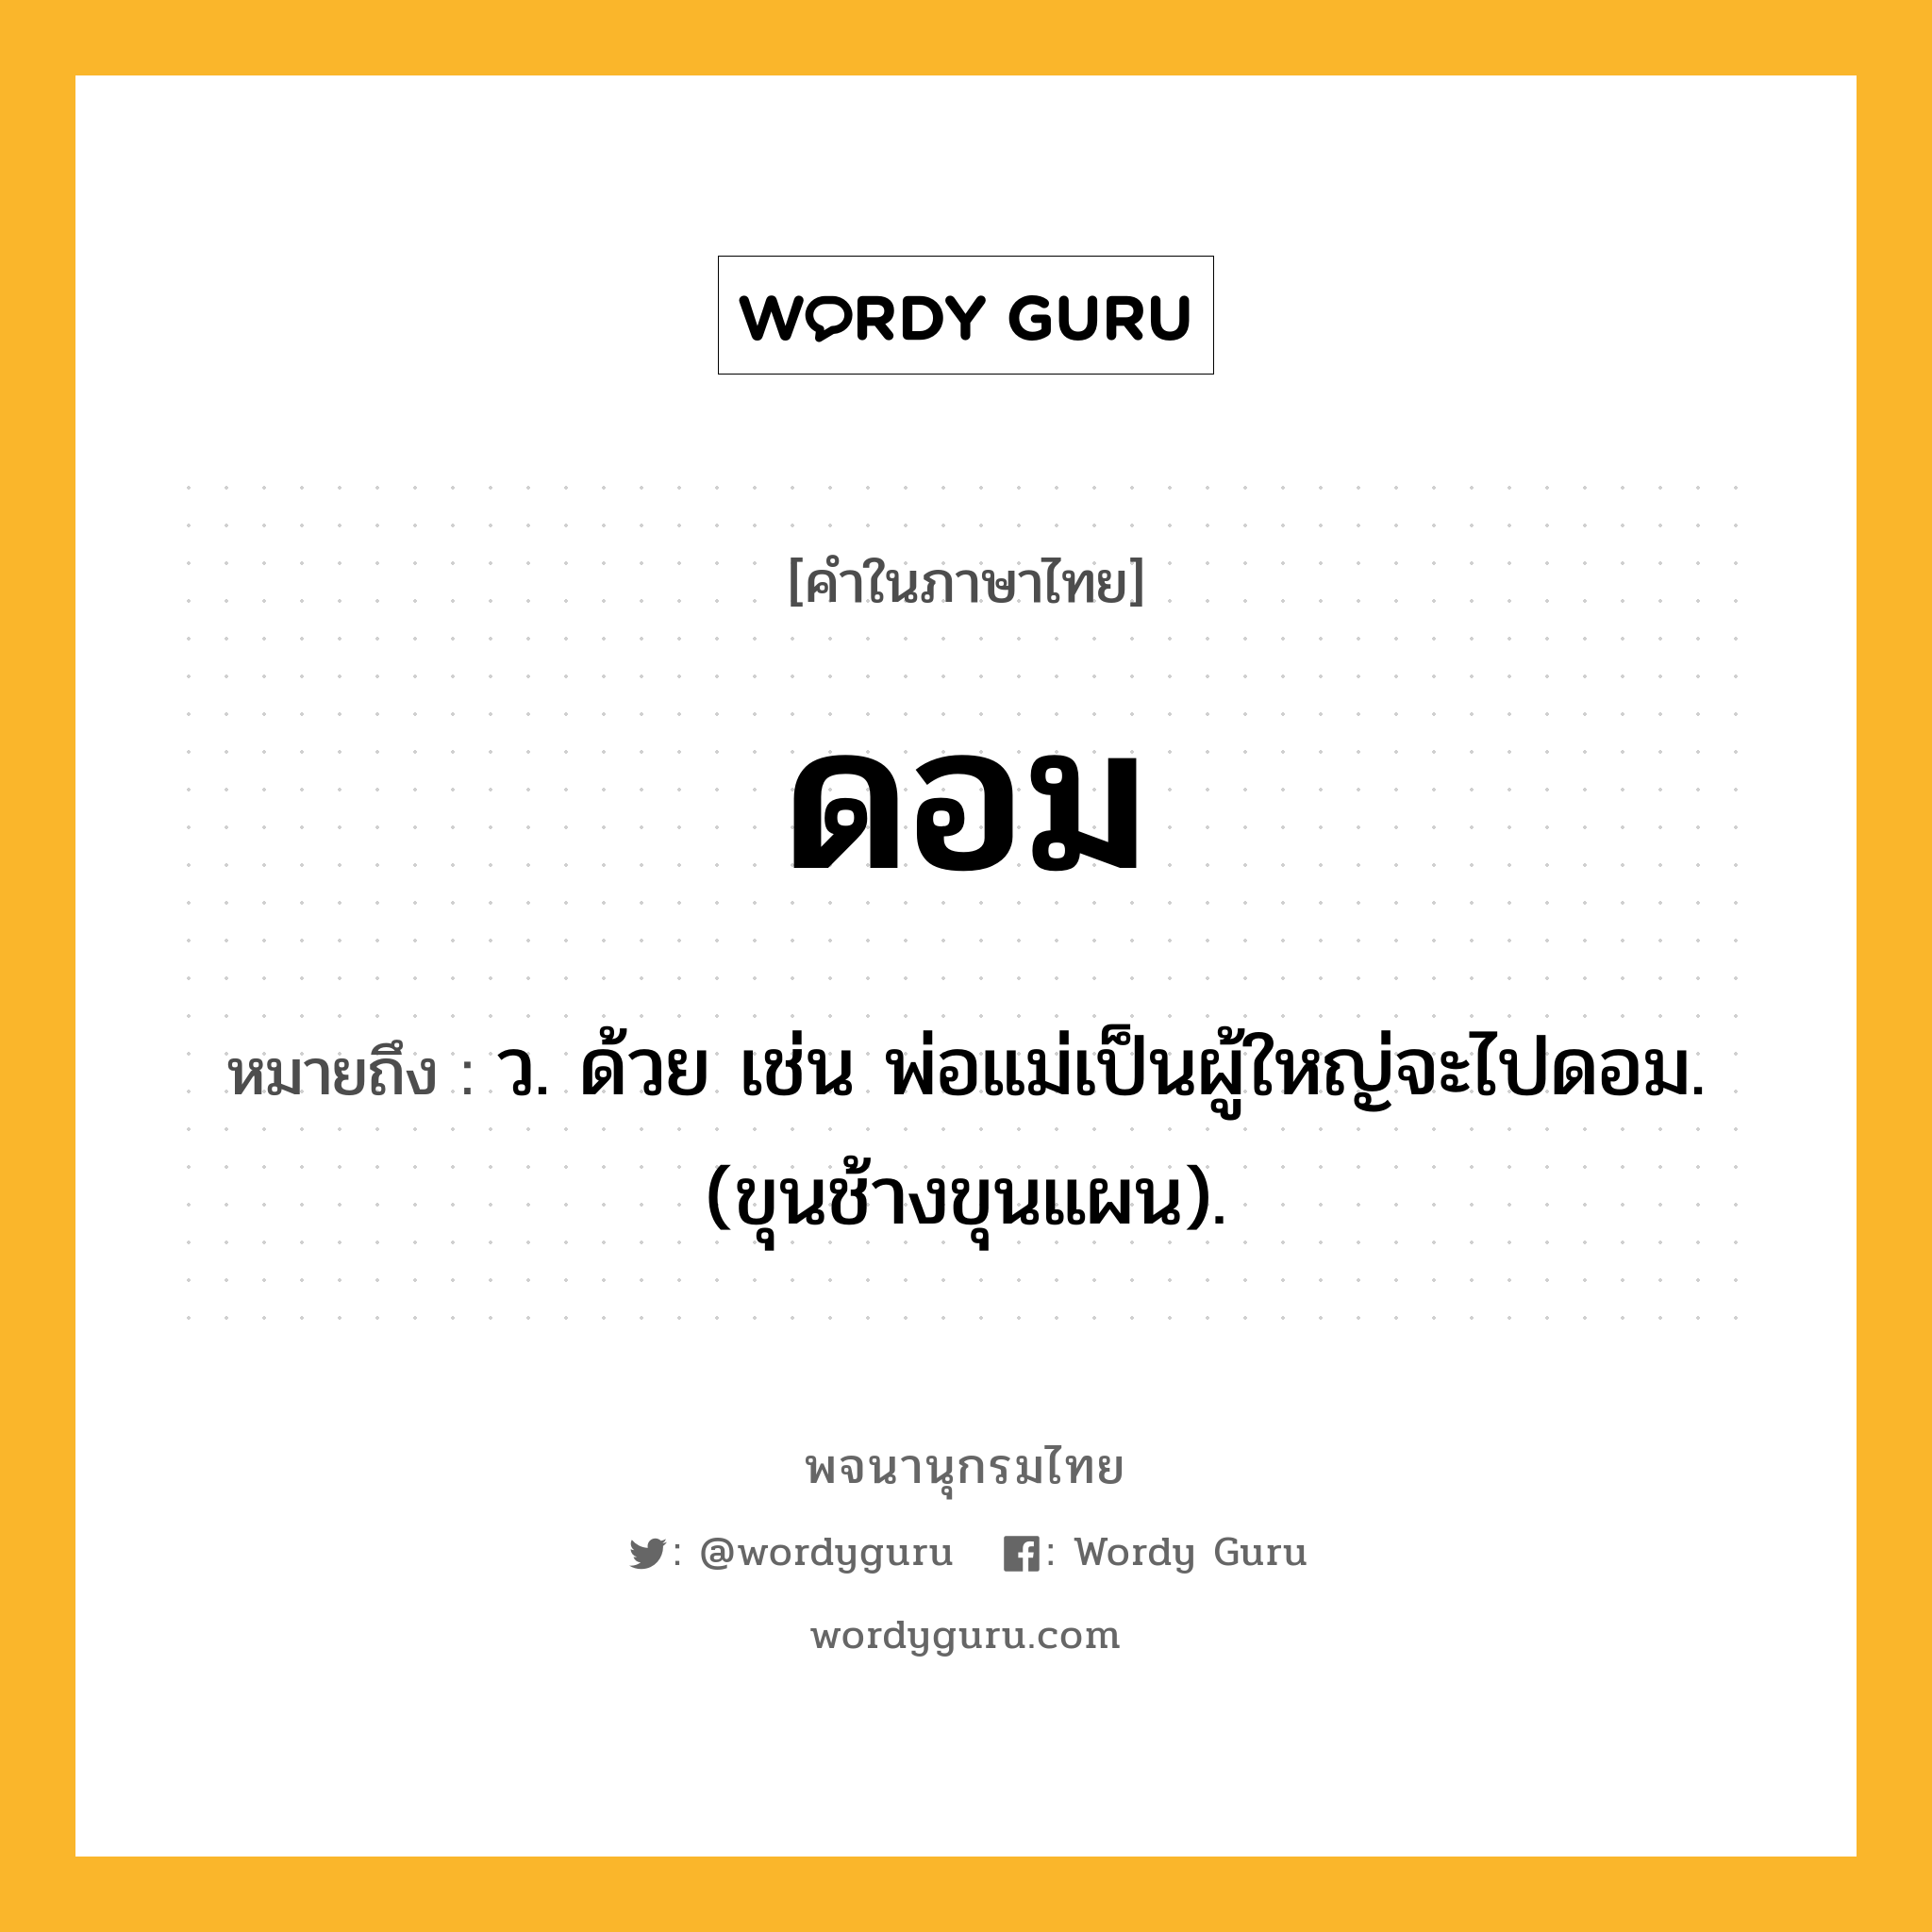 ดอม ความหมาย หมายถึงอะไร?, คำในภาษาไทย ดอม หมายถึง ว. ด้วย เช่น พ่อแม่เป็นผู้ใหญ่จะไปดอม. (ขุนช้างขุนแผน).